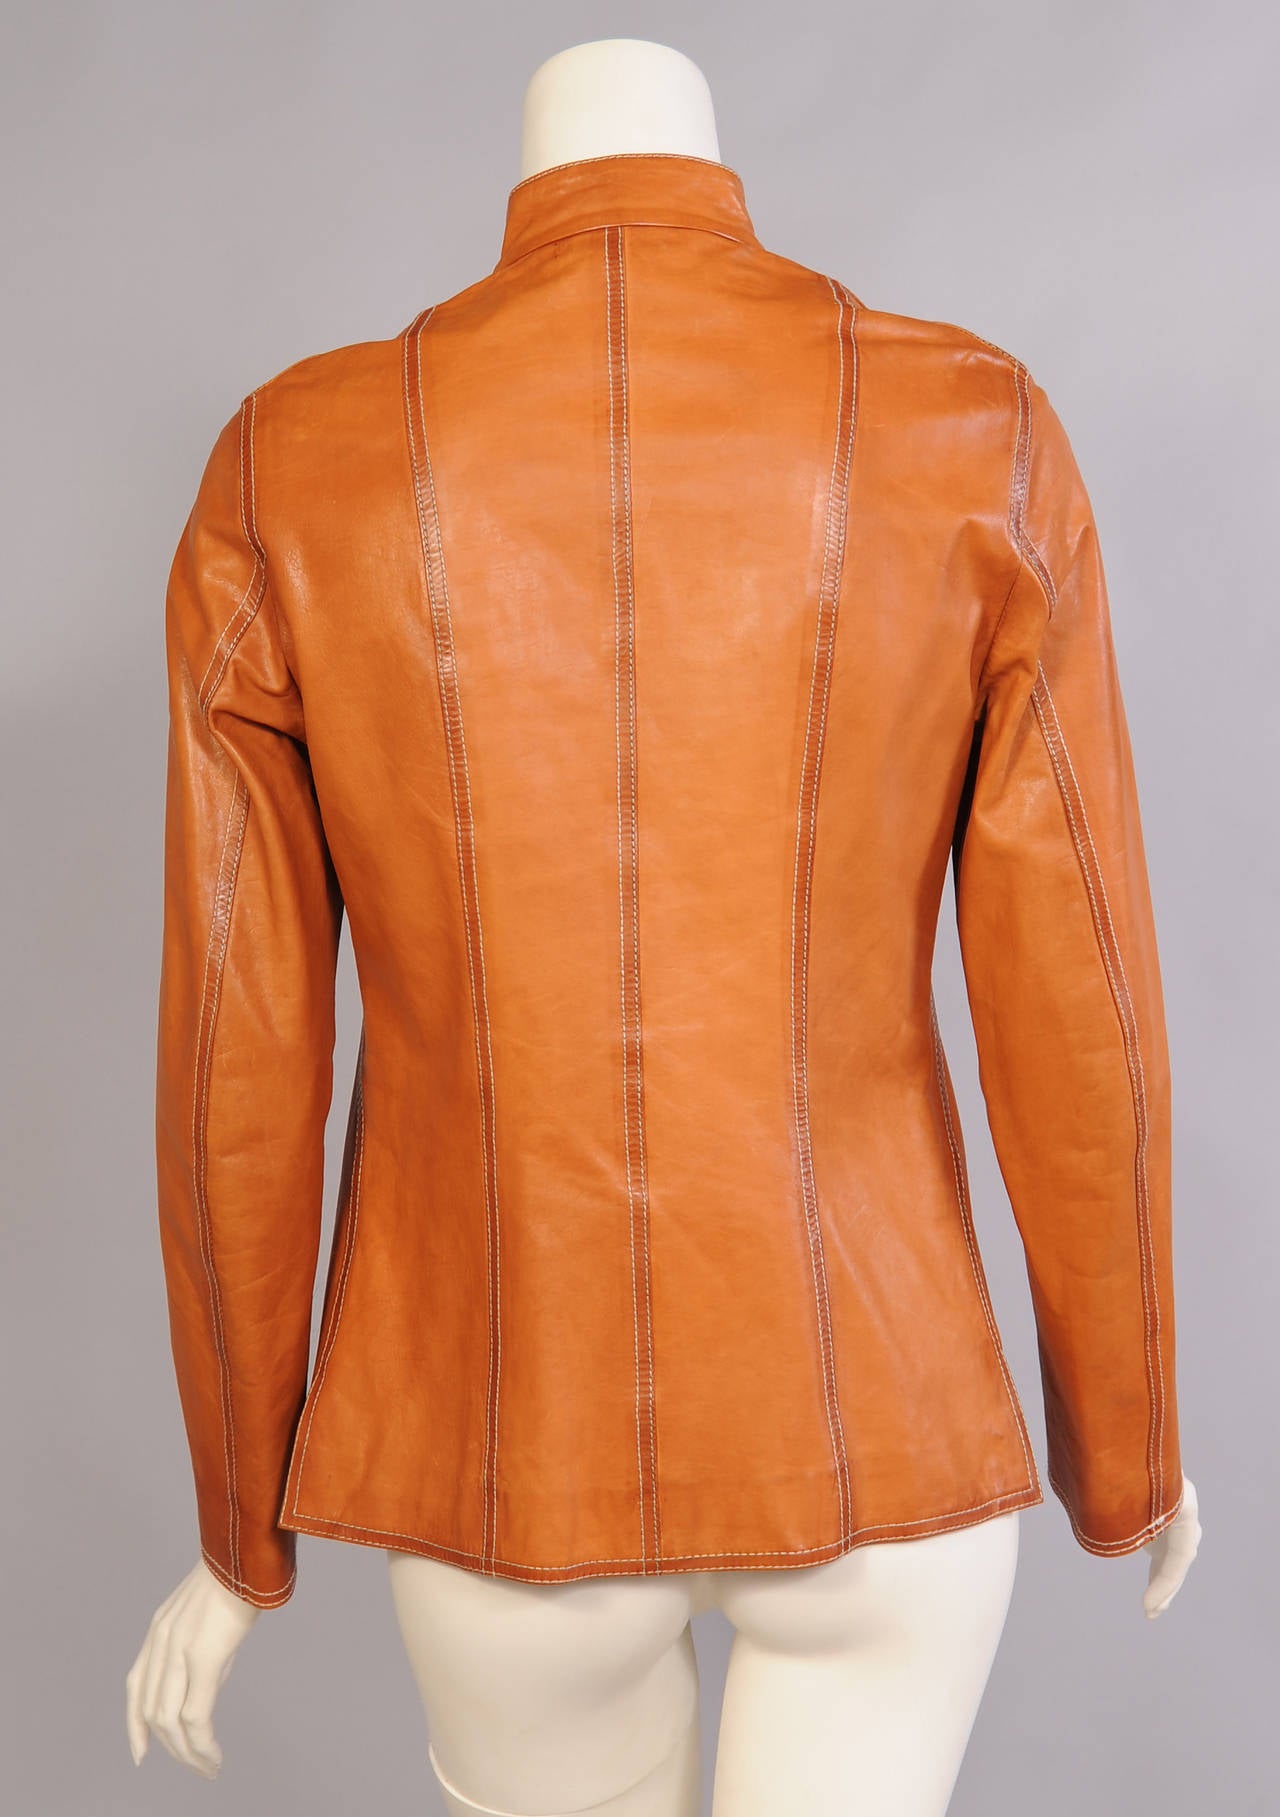 Orange Jil Sander Ombred Leather Jacket, Never Worn